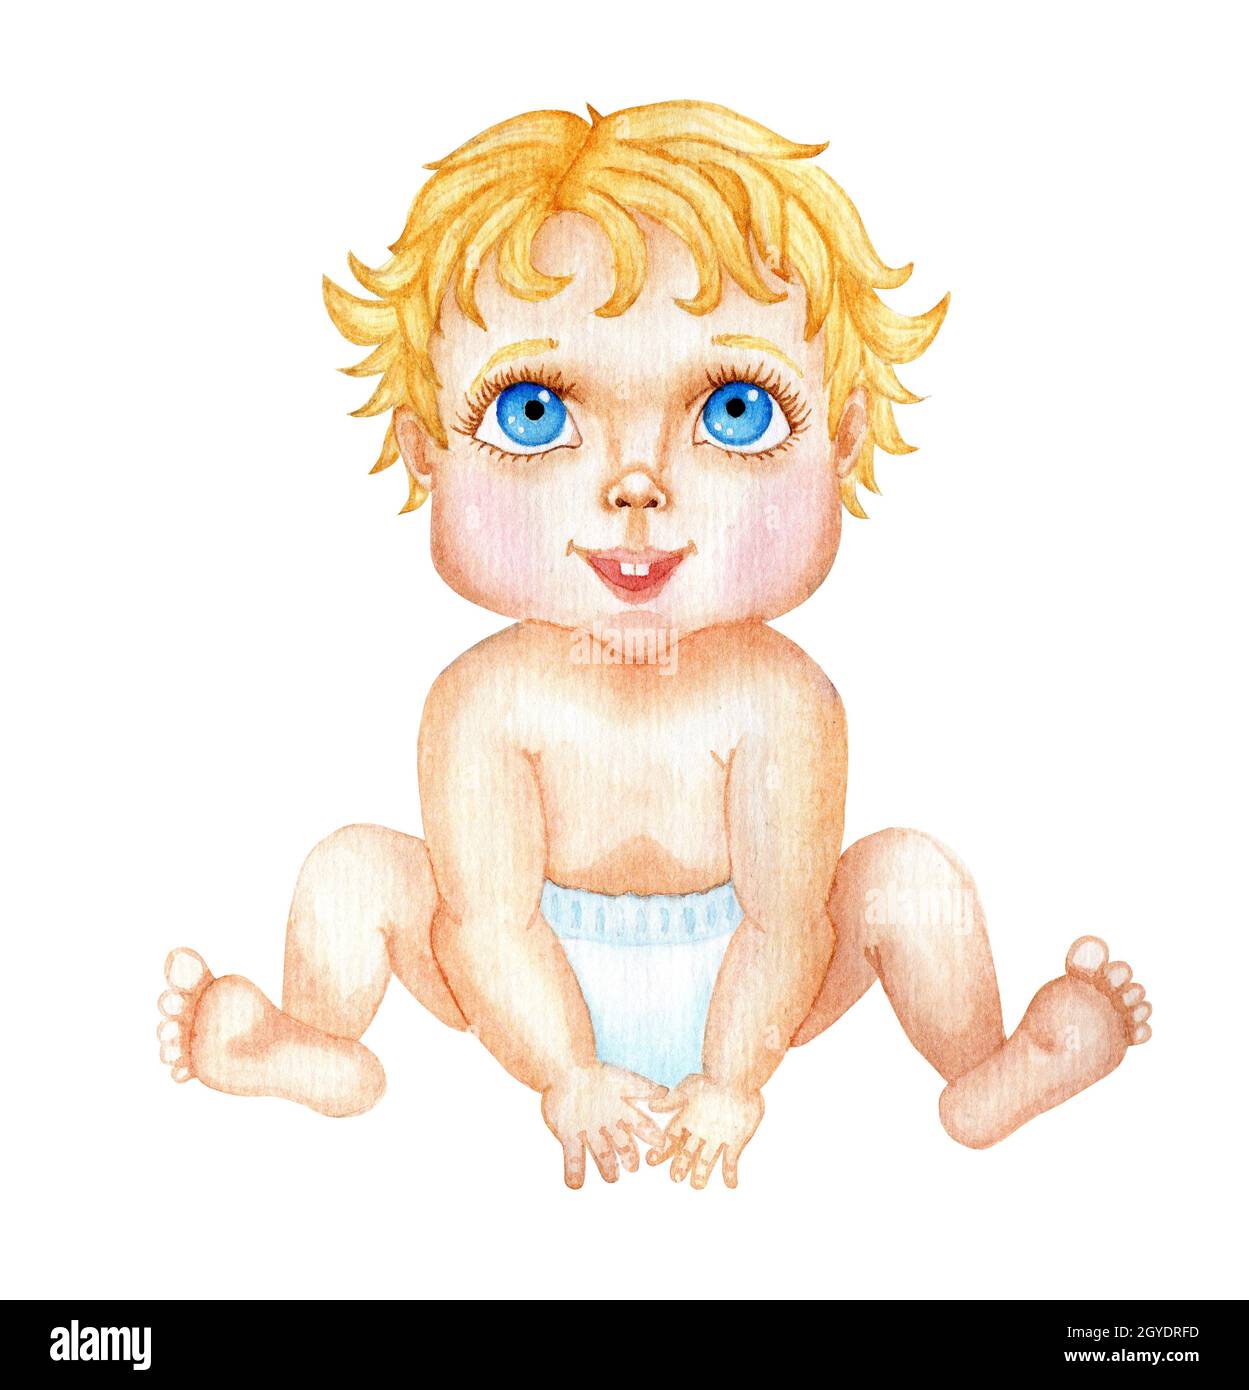 Aquarelle mignon petit bébé avec de grands yeux bleus est assis dans un couches.Illustration de dessin animé pour enfants isolée sur fond blanc.Dessiné à la main. Banque D'Images